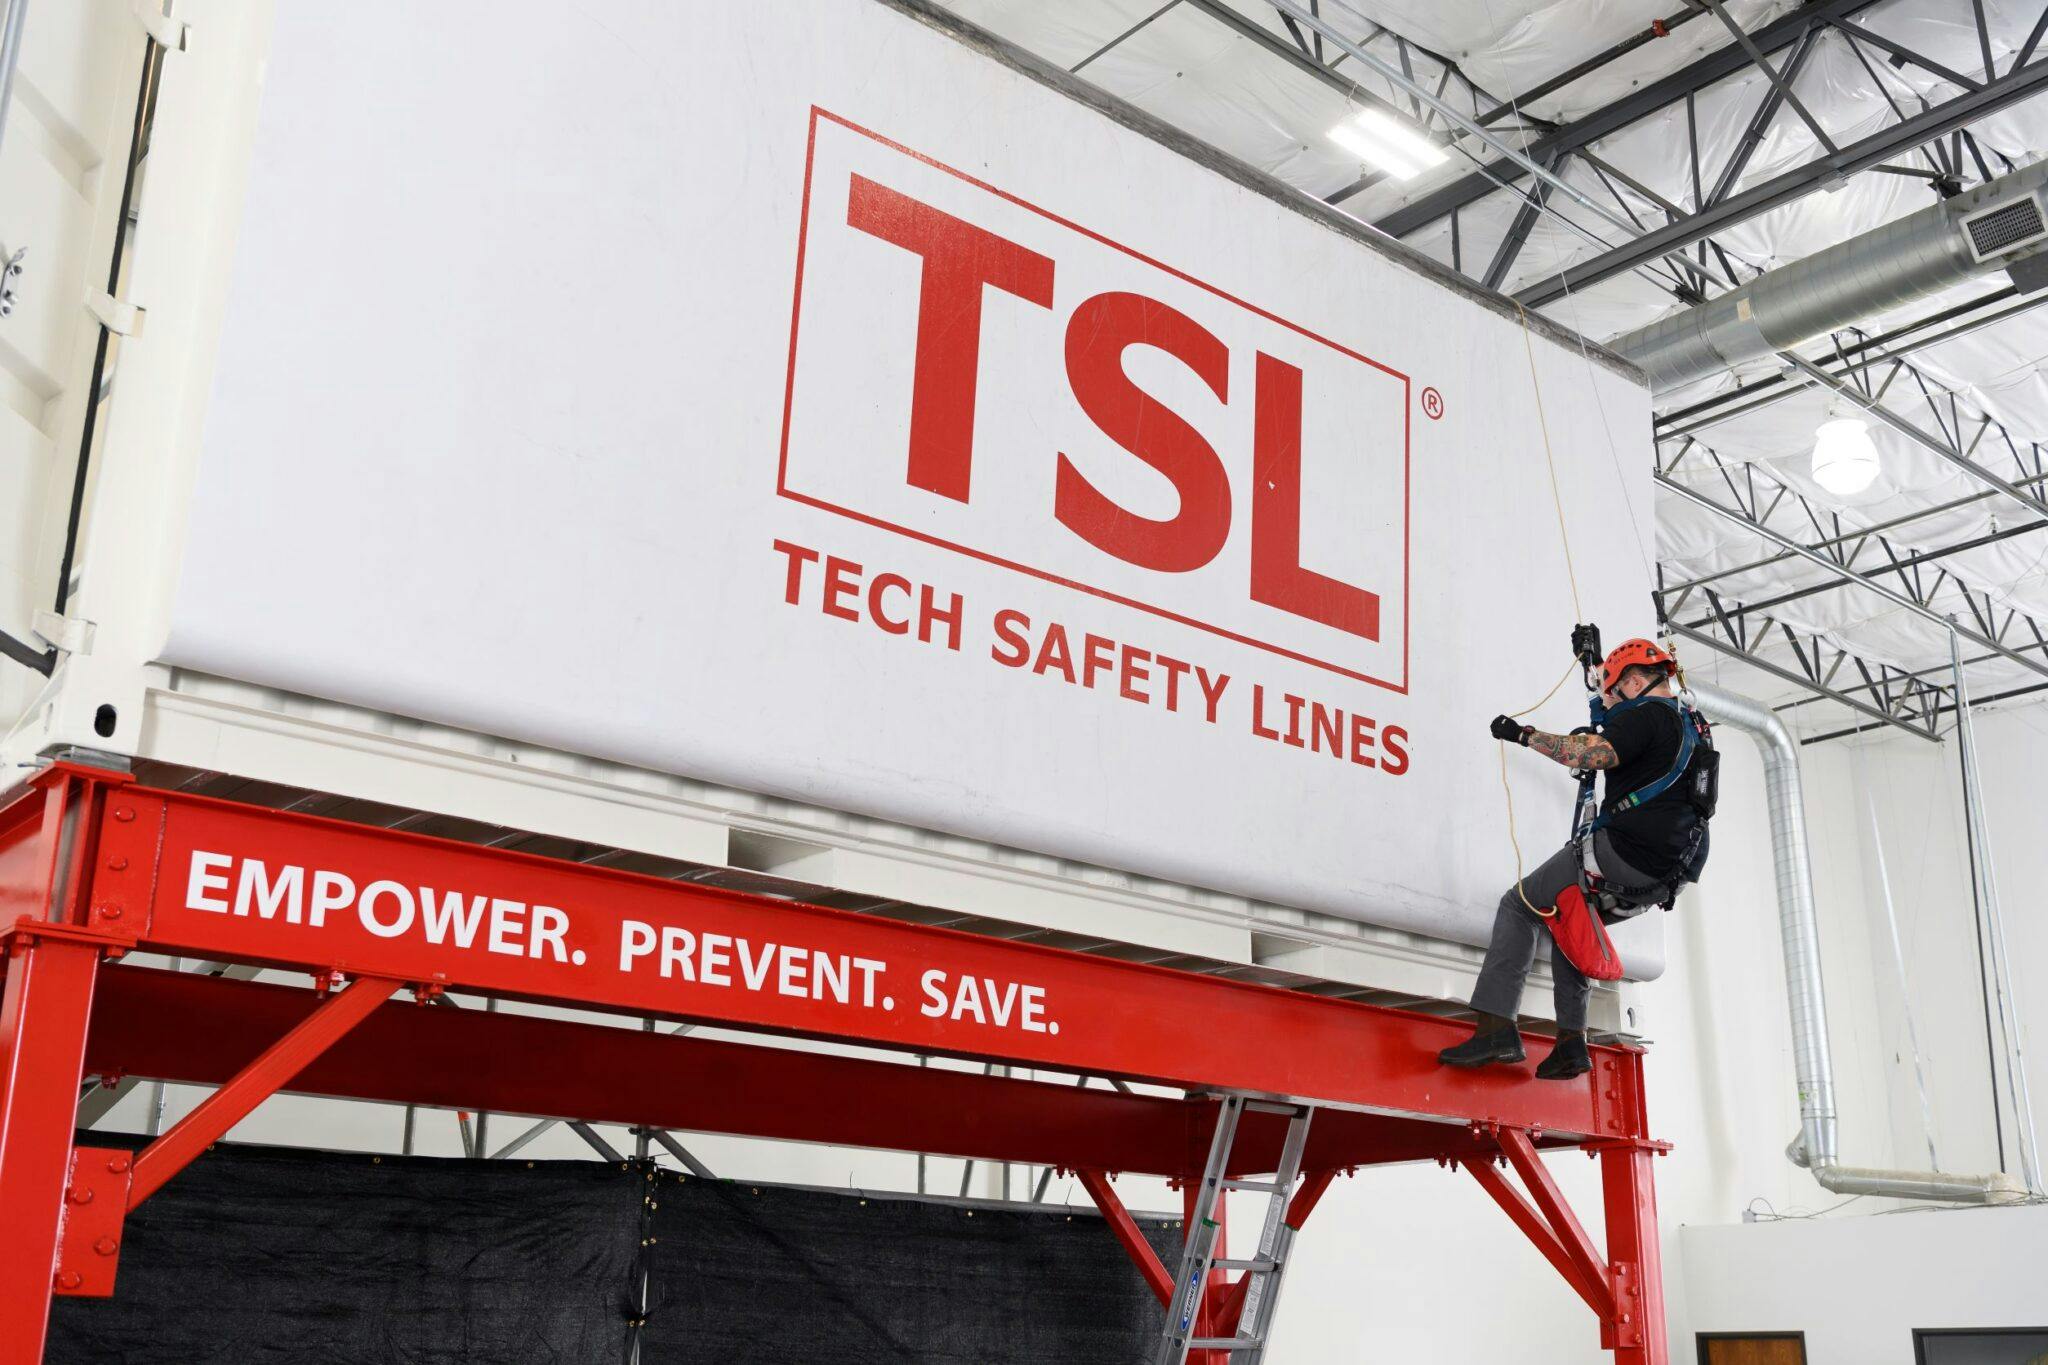 Basic safety training with TSL